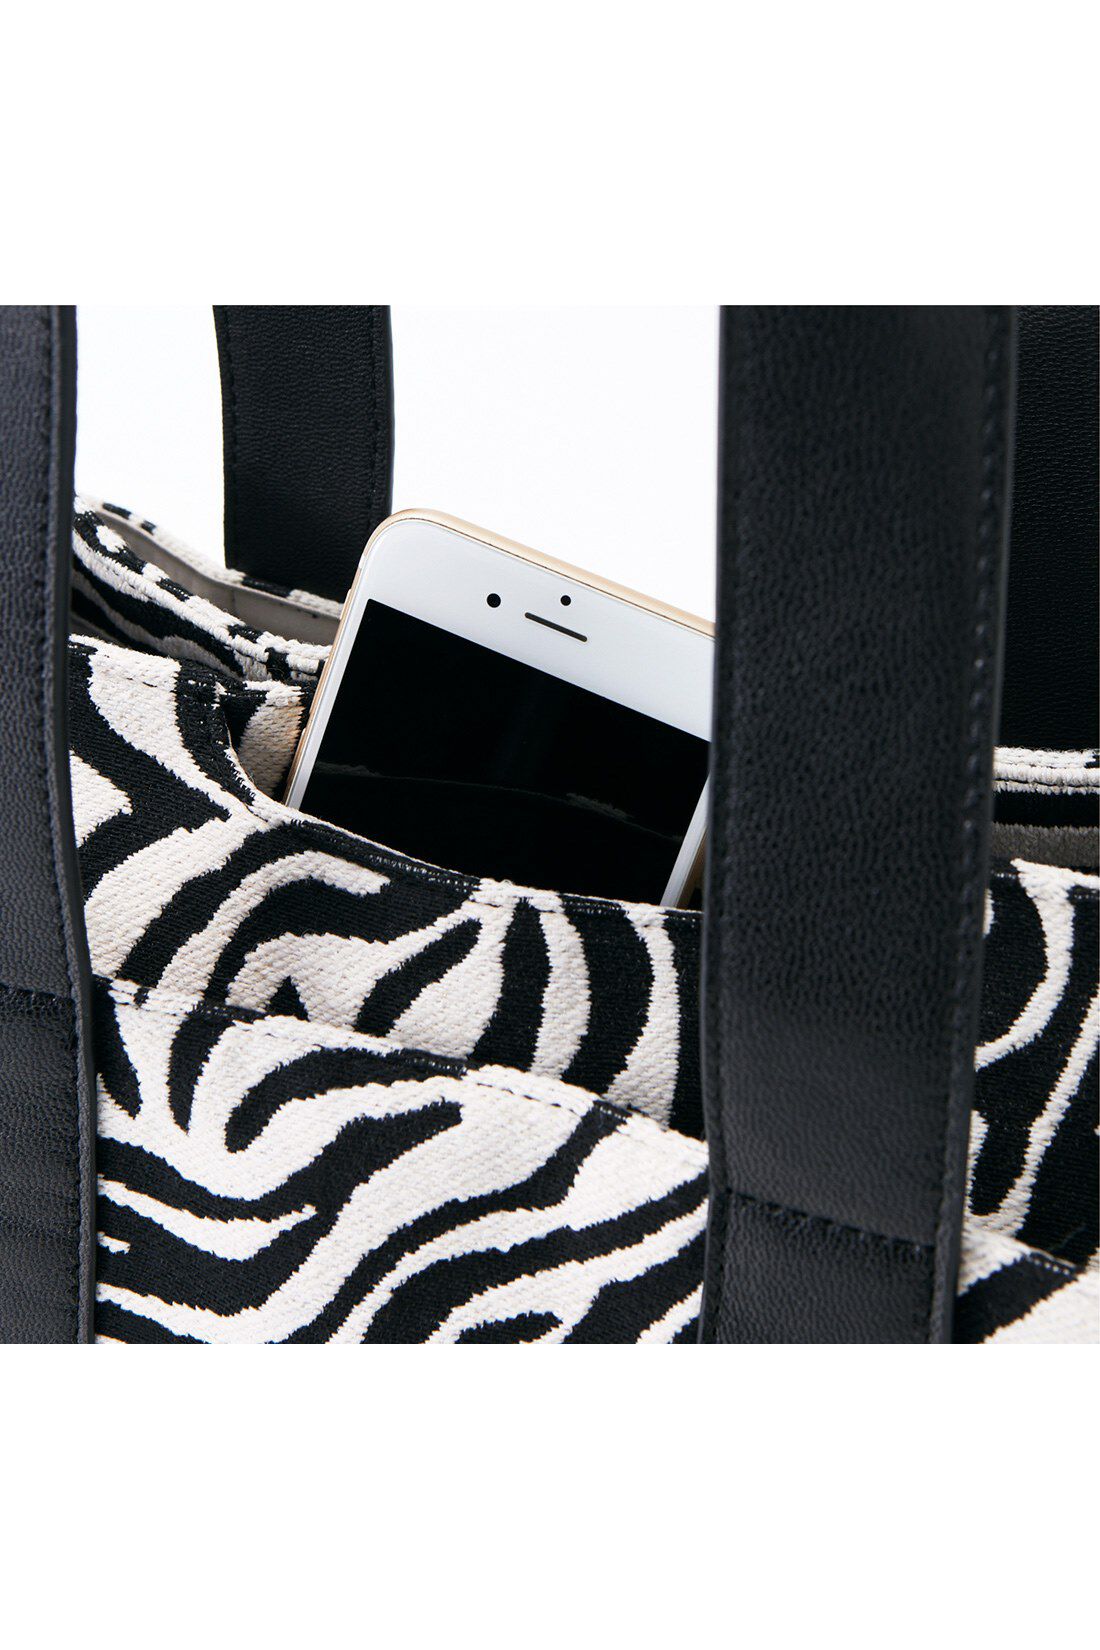 IEDIT|IEDIT[イディット]　ツートーンのゼブラ柄がシックな本革遣いトートバッグ〈ゼブラブラック〉|出し入れしやすいスマートフォン用のポケットも。